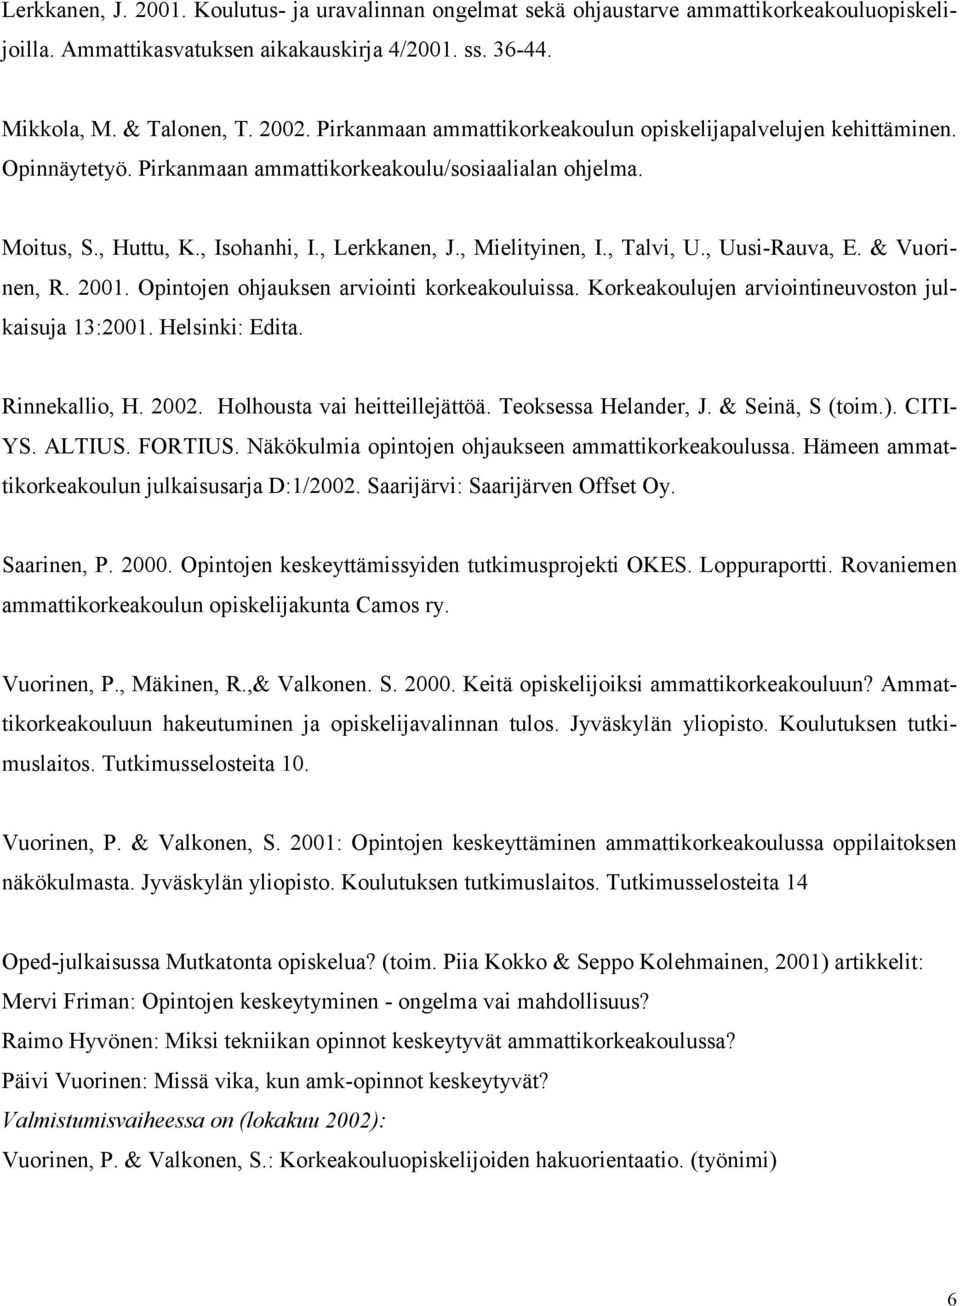 , Talvi, U., Uusi-Rauva, E. & Vuorinen, R. 2001. Opintojen ohjauksen arviointi korkeakouluissa. Korkeakoulujen arviointineuvoston julkaisuja 13:2001. Helsinki: Edita. Rinnekallio, H. 2002.